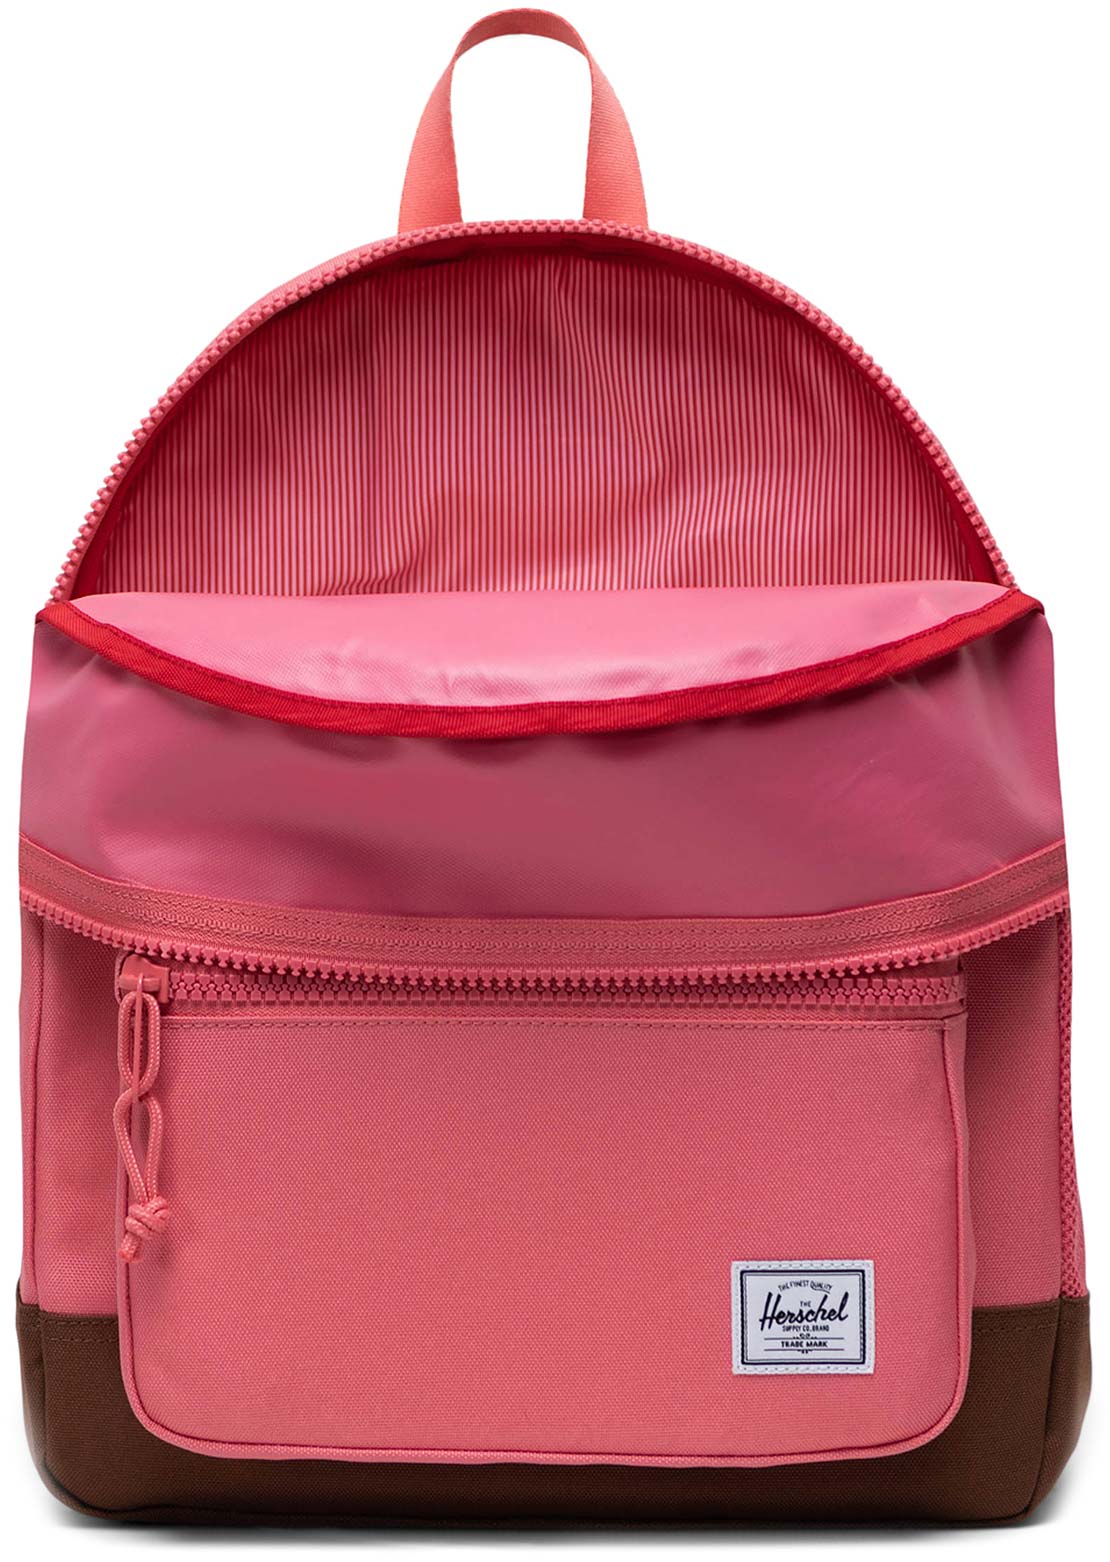 Herschel Junior Heritage Backpack Tea Rose/Saddle Brown